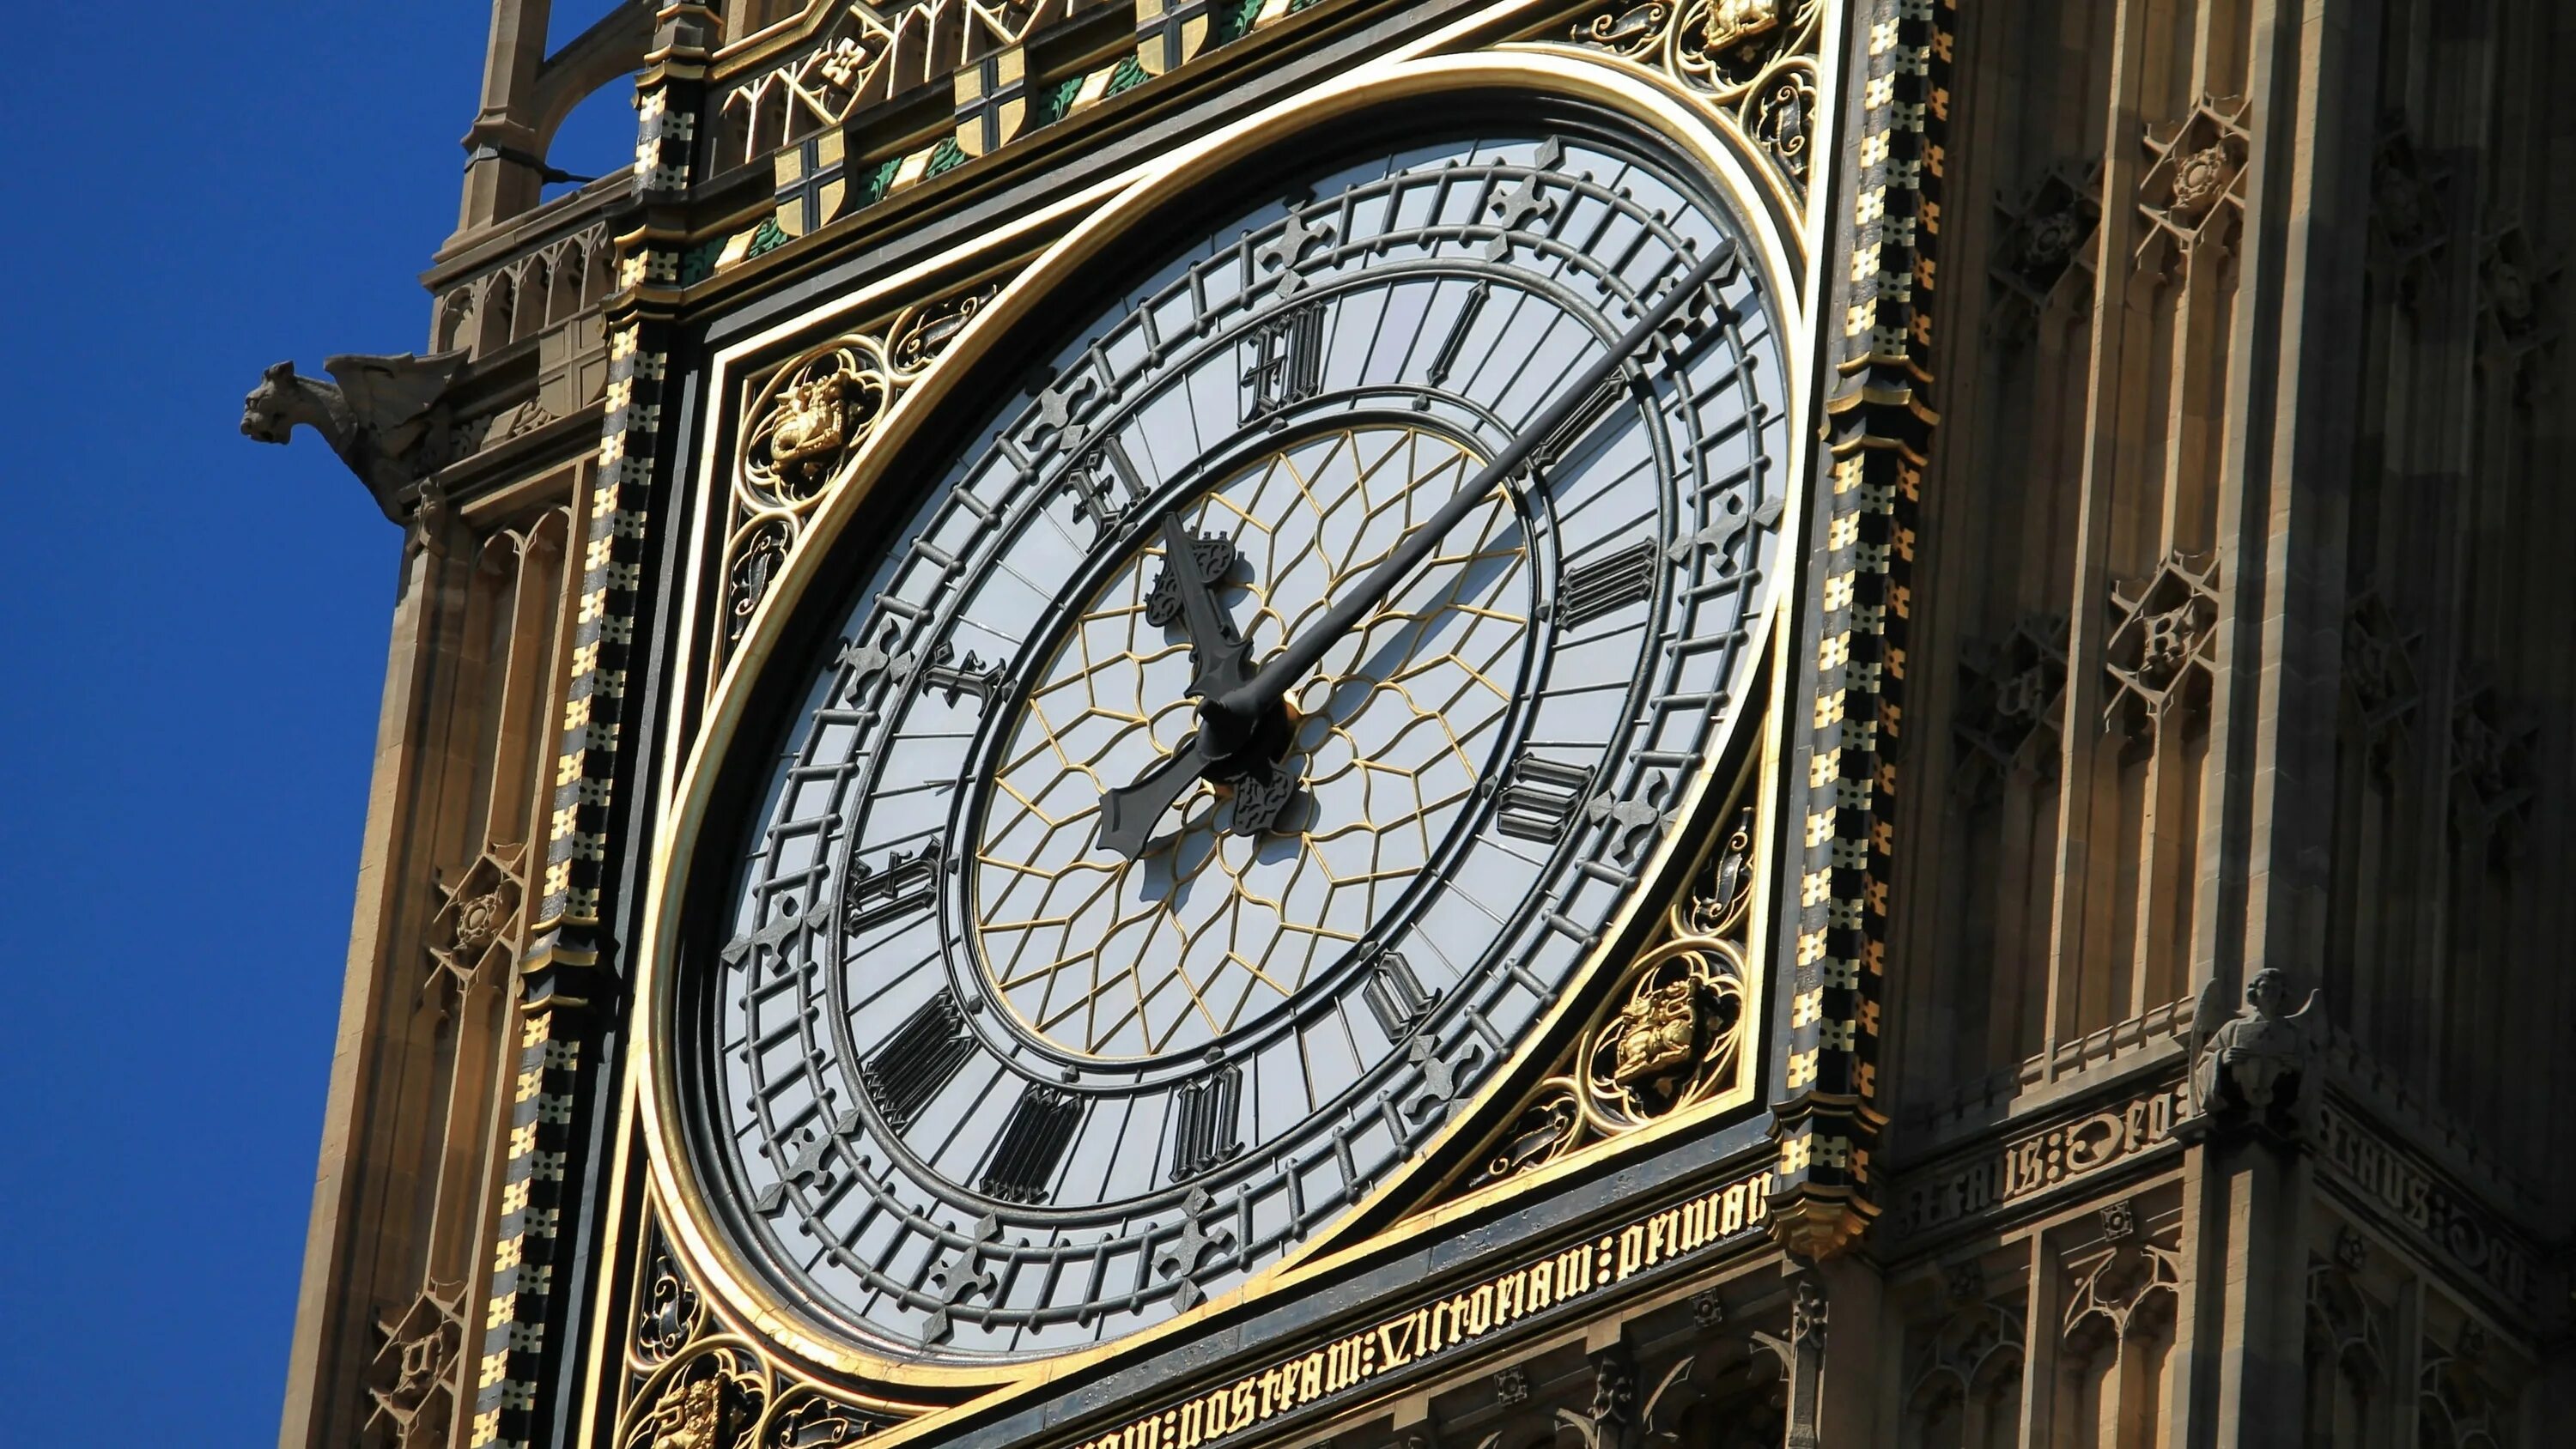 Ultra big часы. Башня Биг Бен в Лондоне. Биг-Бен (башня Елизаветы). Часовая башня Биг Бен. Лондонские часы Биг Бен.